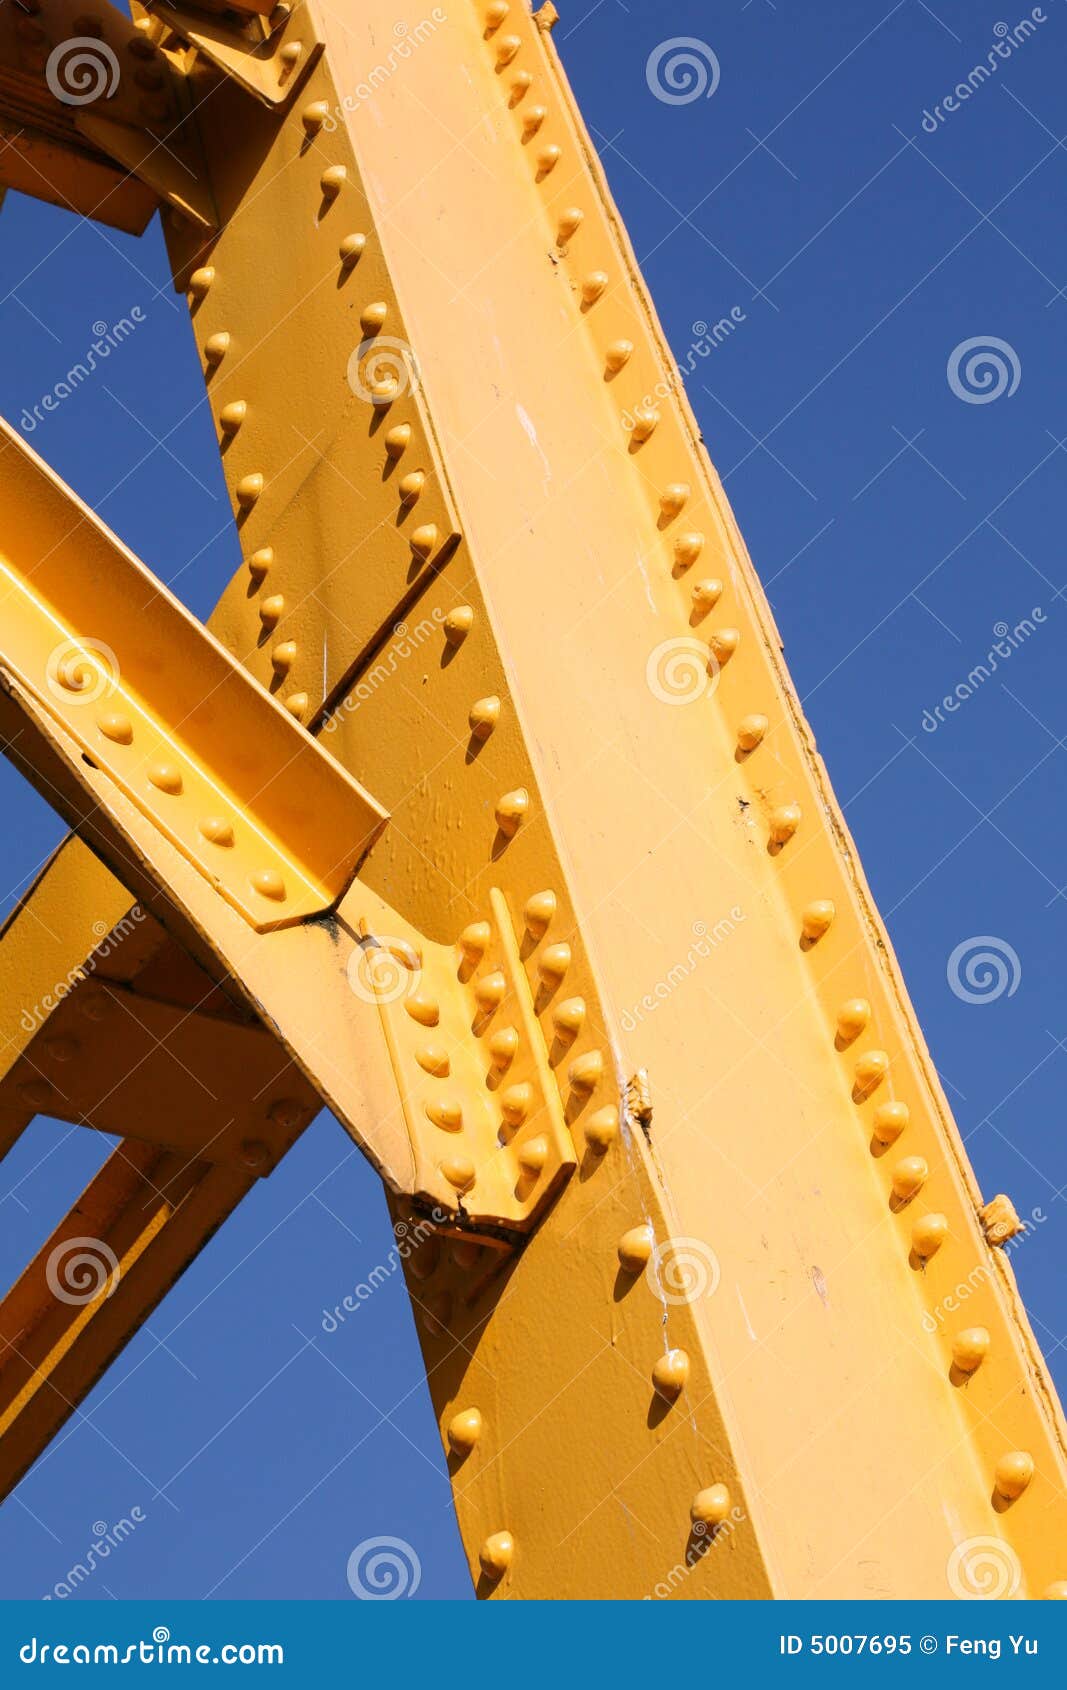 yellow girder